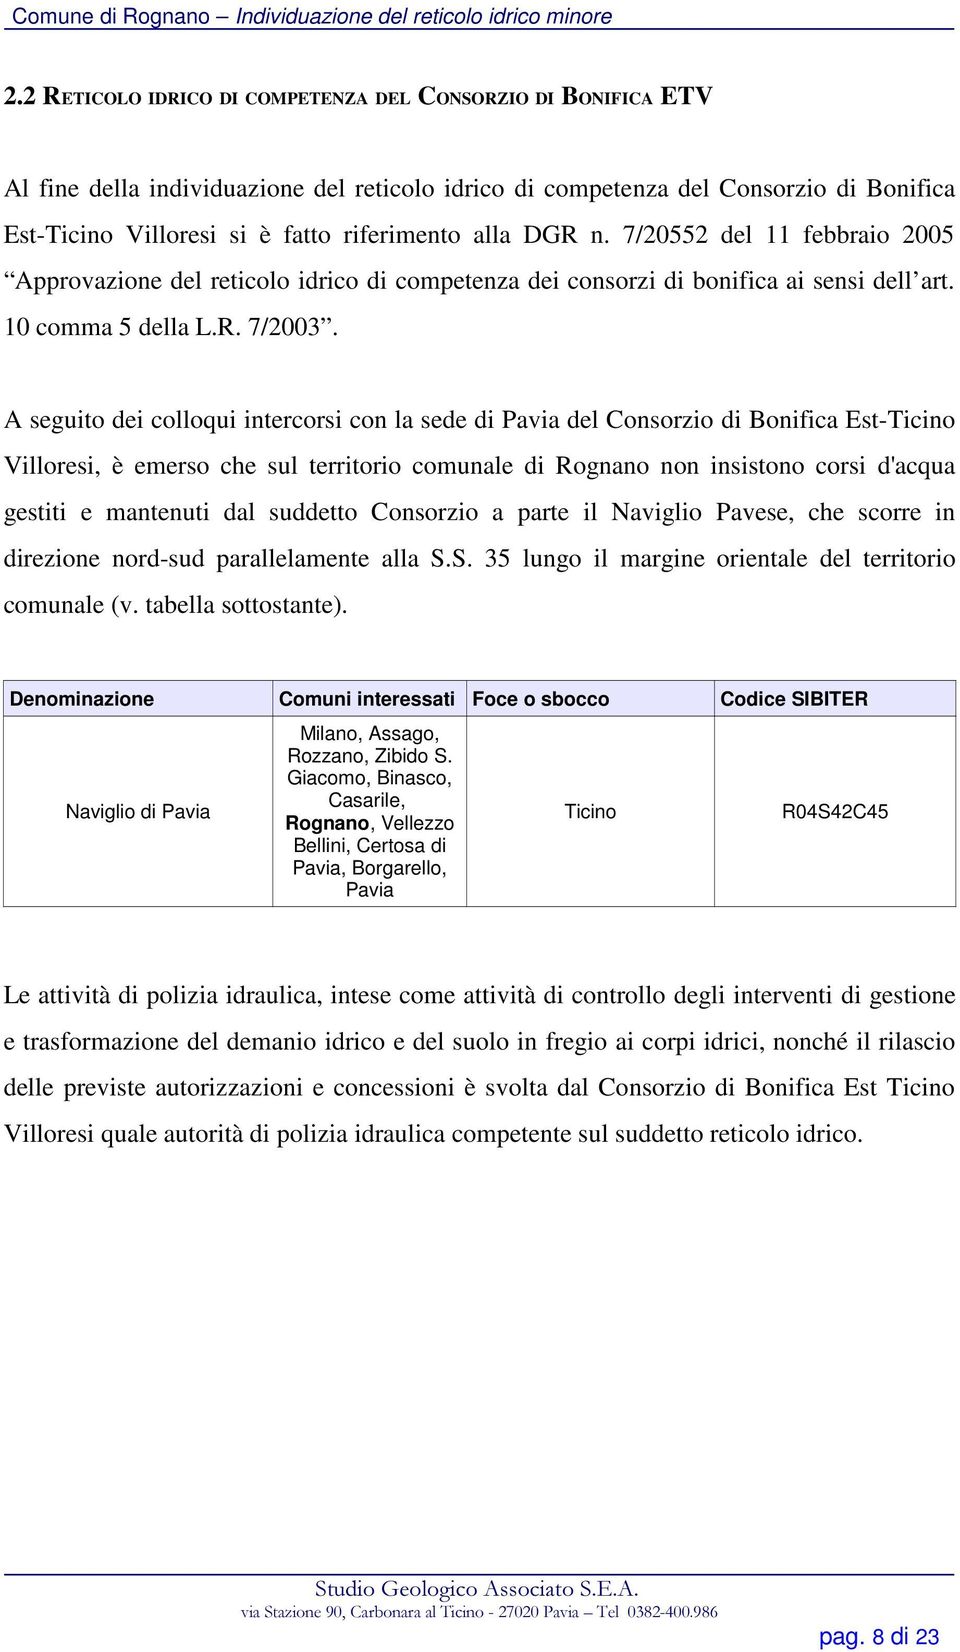 A seguito dei colloqui intercorsi con la sede di Pavia del Consorzio di Bonifica Est-Ticino Villoresi, è emerso che sul territorio comunale di Rognano non insistono corsi d'acqua gestiti e mantenuti